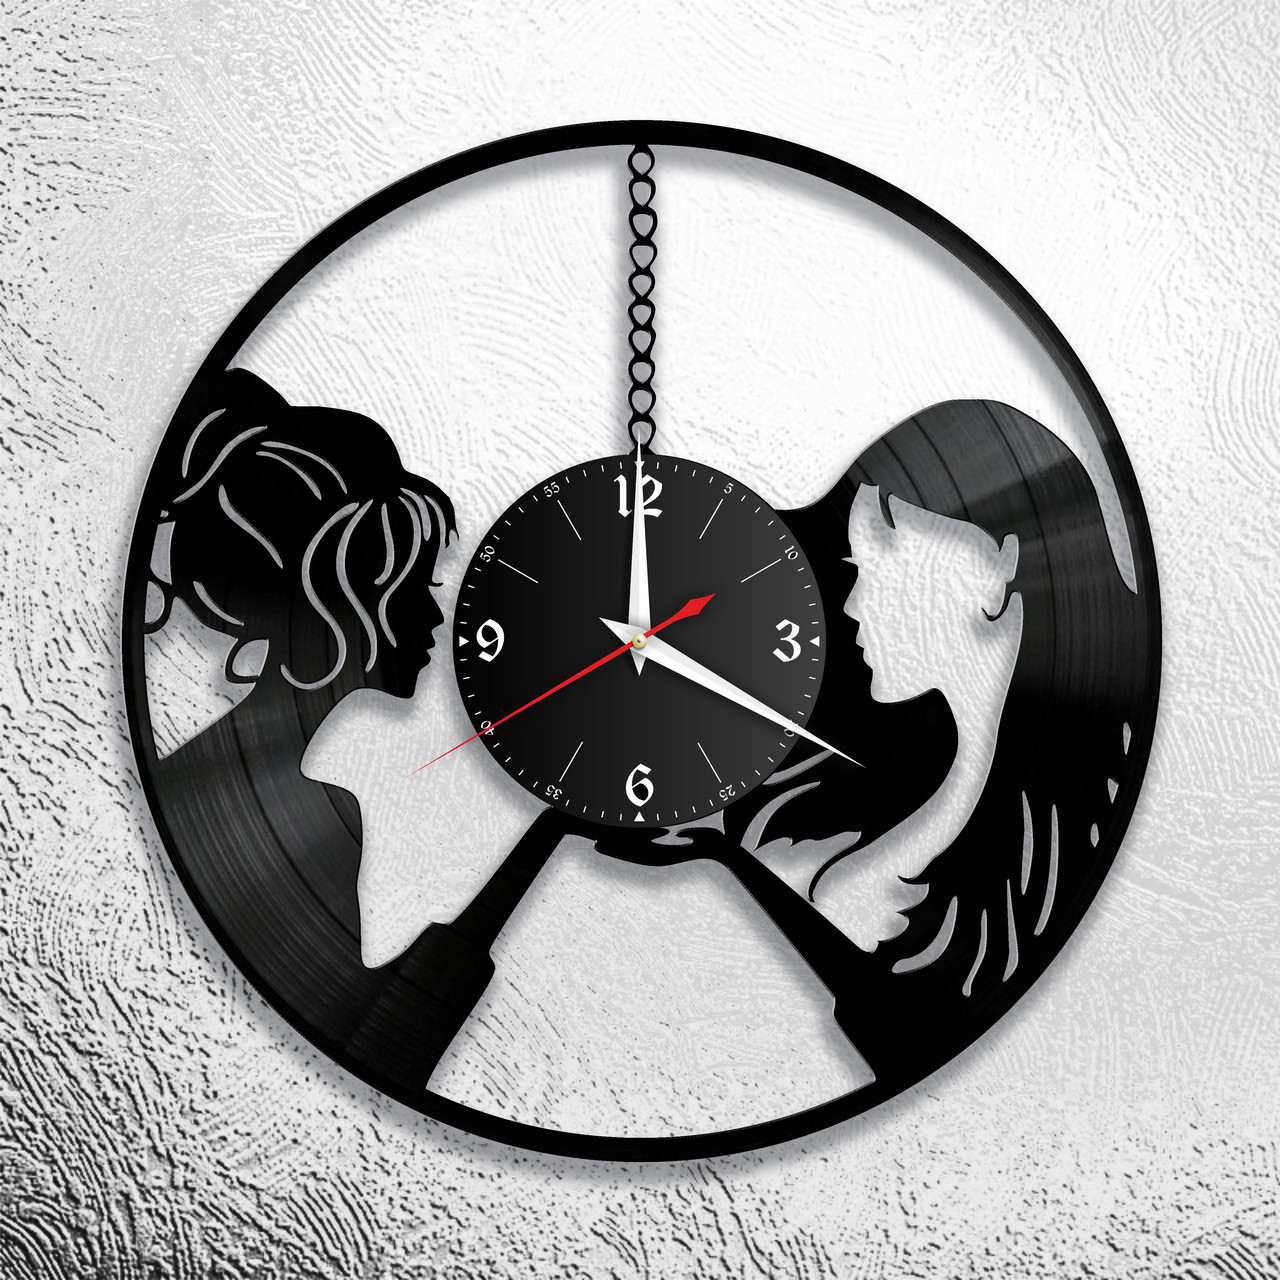 Оригинальные часы из виниловых пластинок "2 девушки" версия 1, фото 1